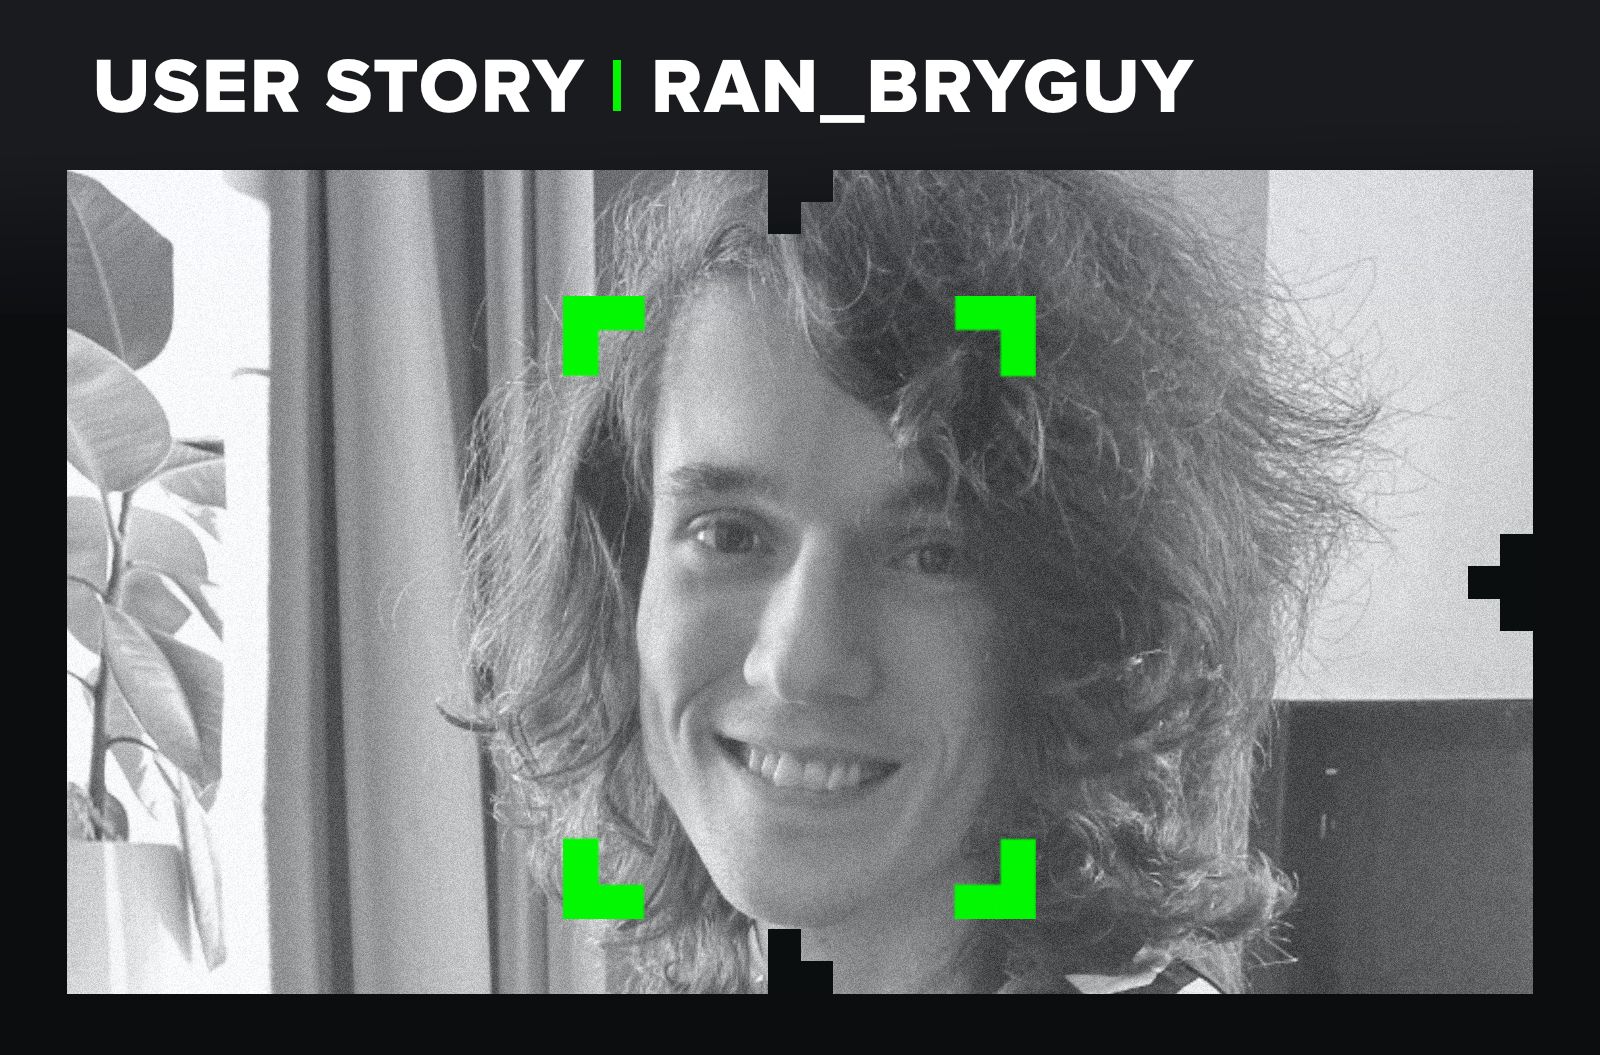 RAN_Bryguy - User Story